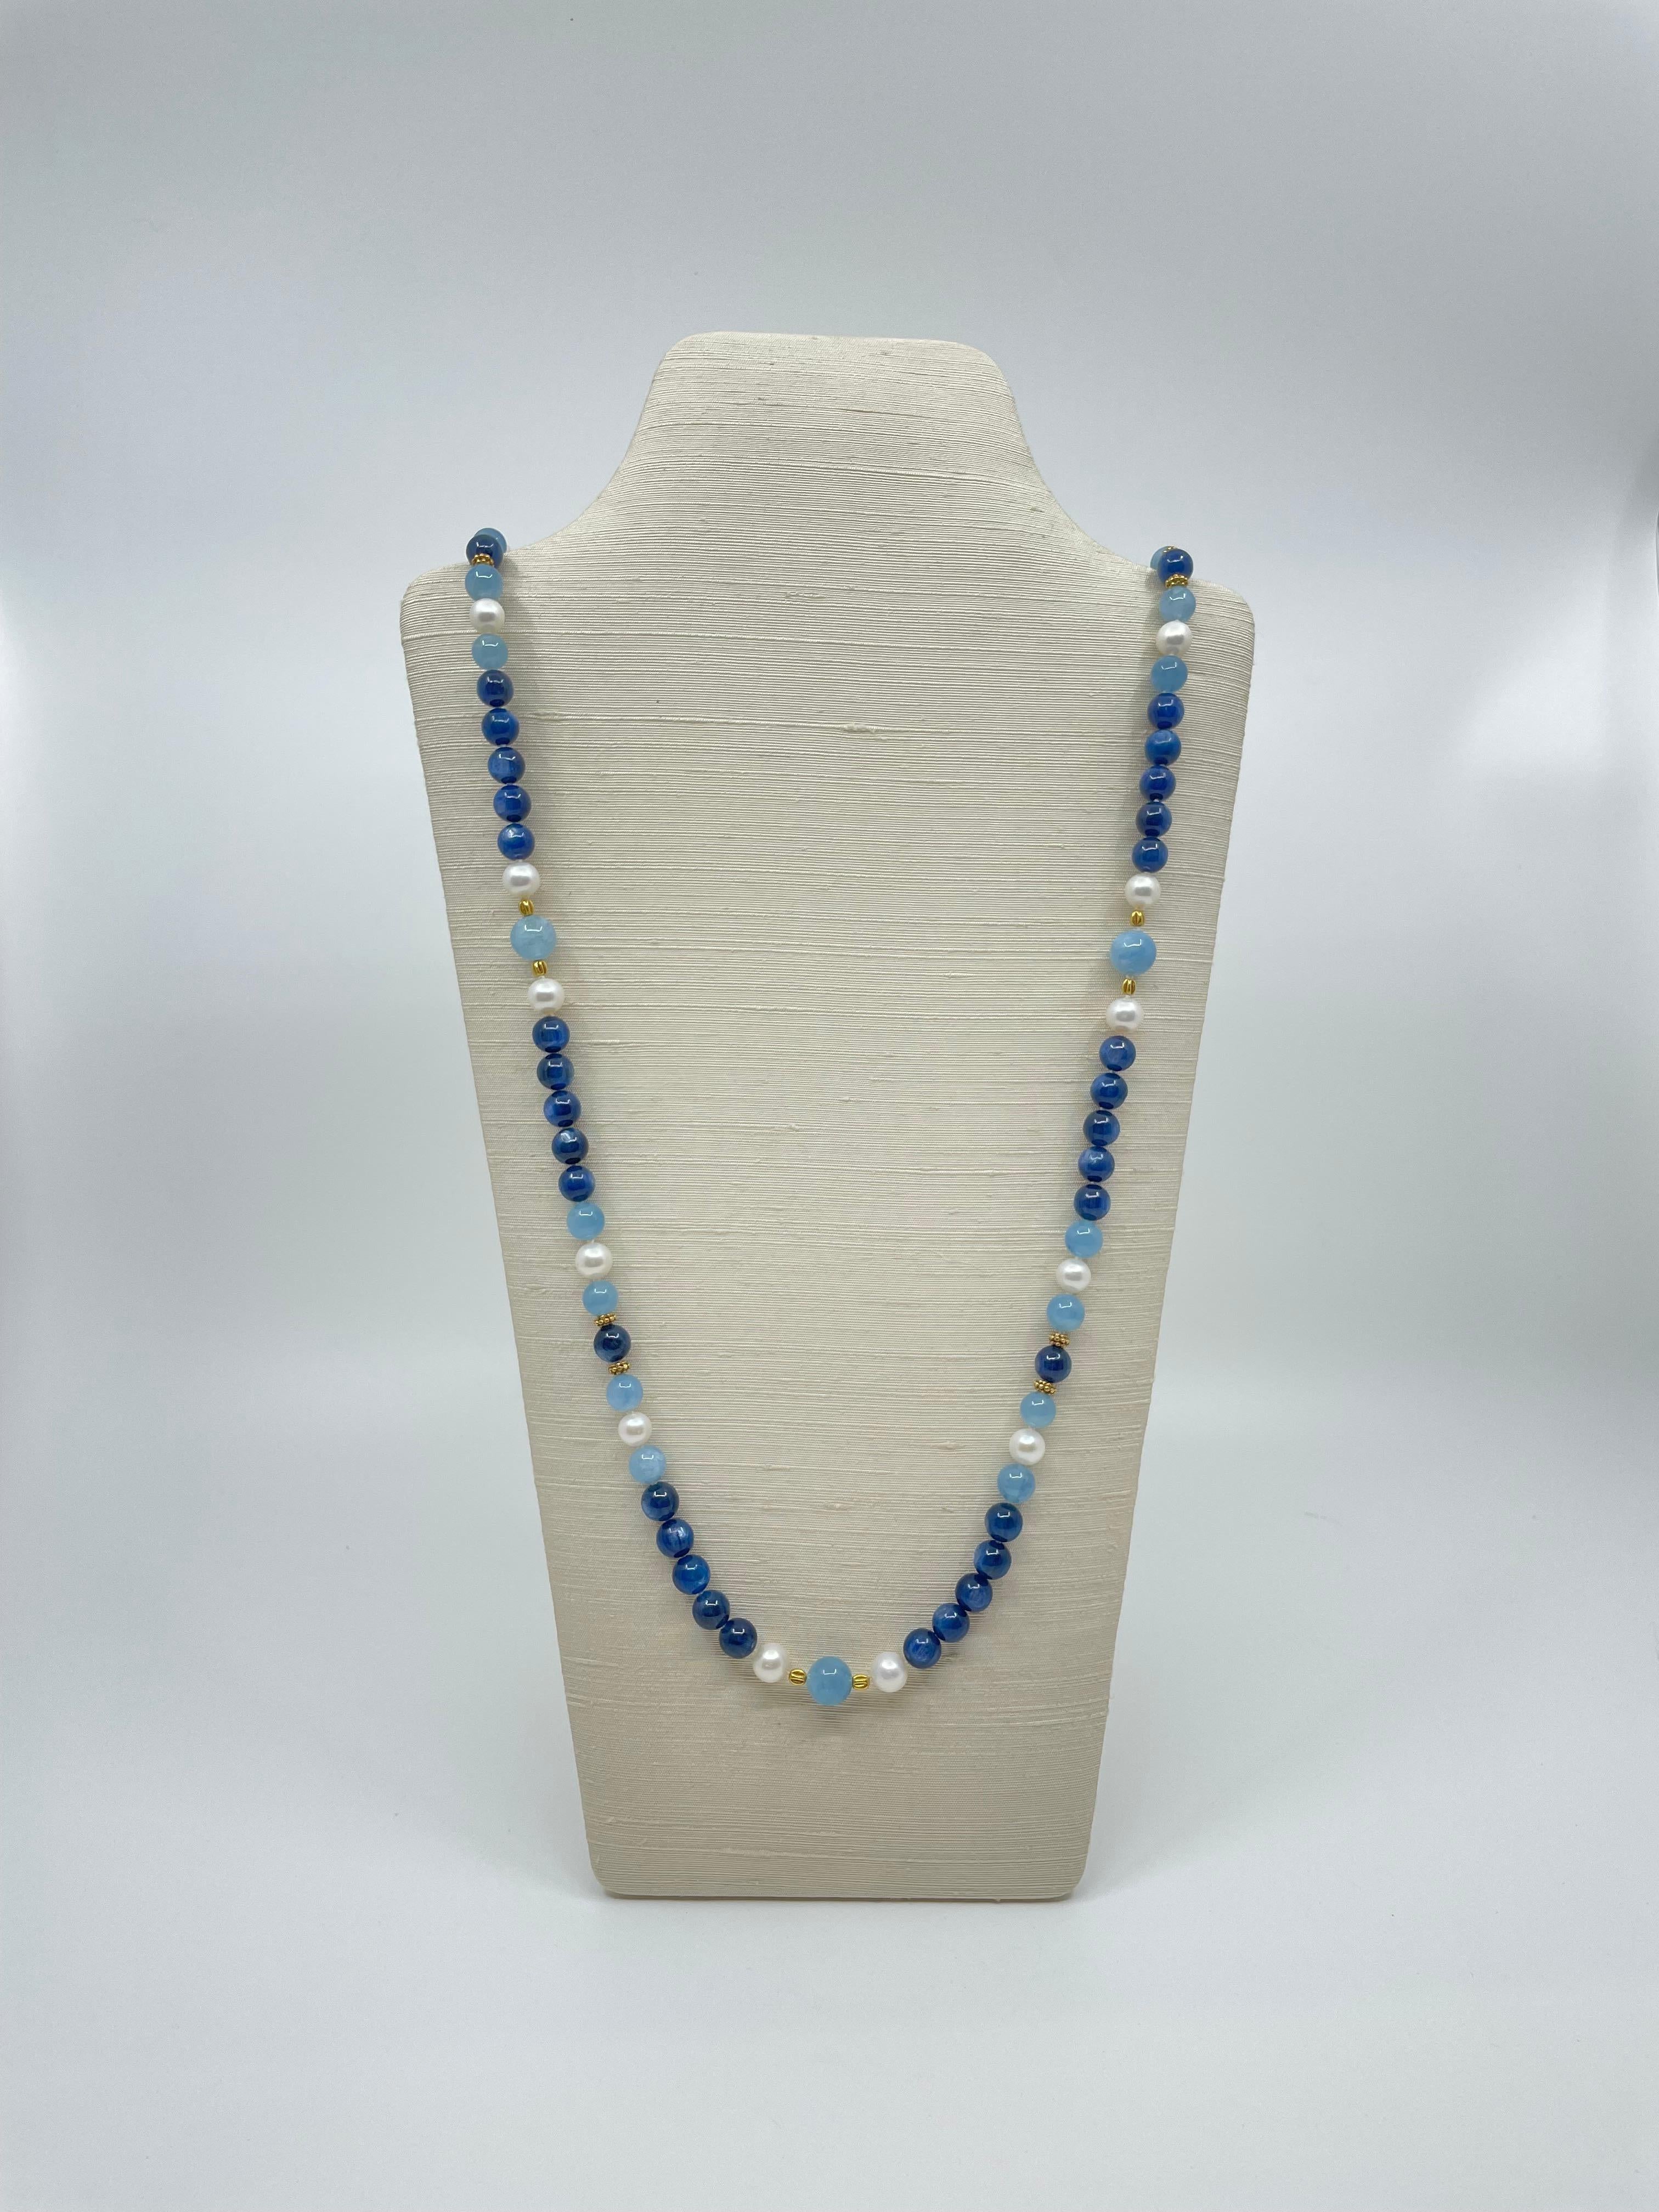 Ce long collier fait à la main est composé de magnifiques perles de kyanite bleu foncé, de perles rondes d'aigue-marine, de perles d'eau douce, espacées par des perles en or 18k. Il se ferme par un fermoir à bascule en or 18k. 
Cette jolie pièce